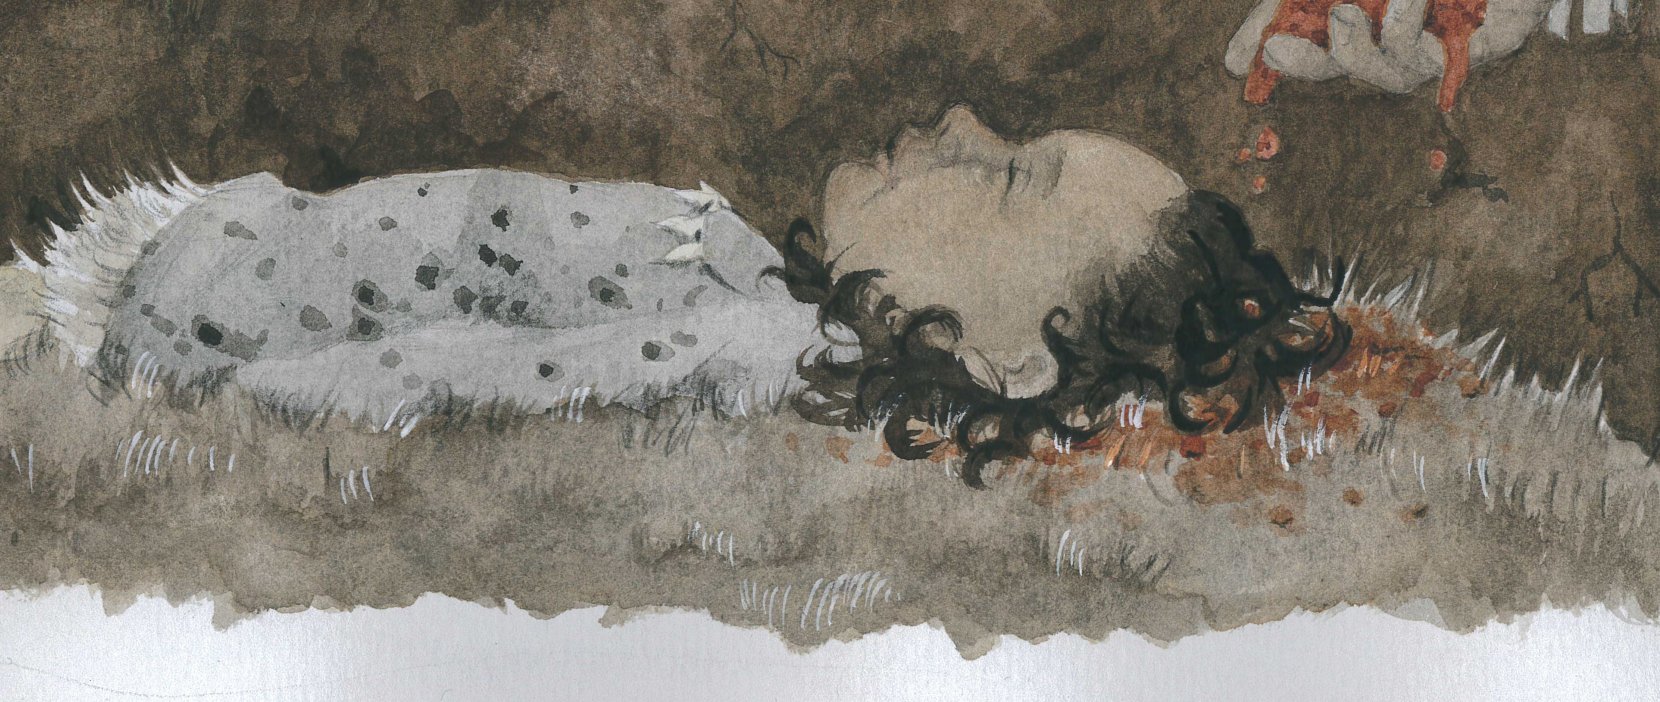 Gravlæggelsen af en lille pige i jægerstenalderen. Tegning Anna Vebæk Gelskov